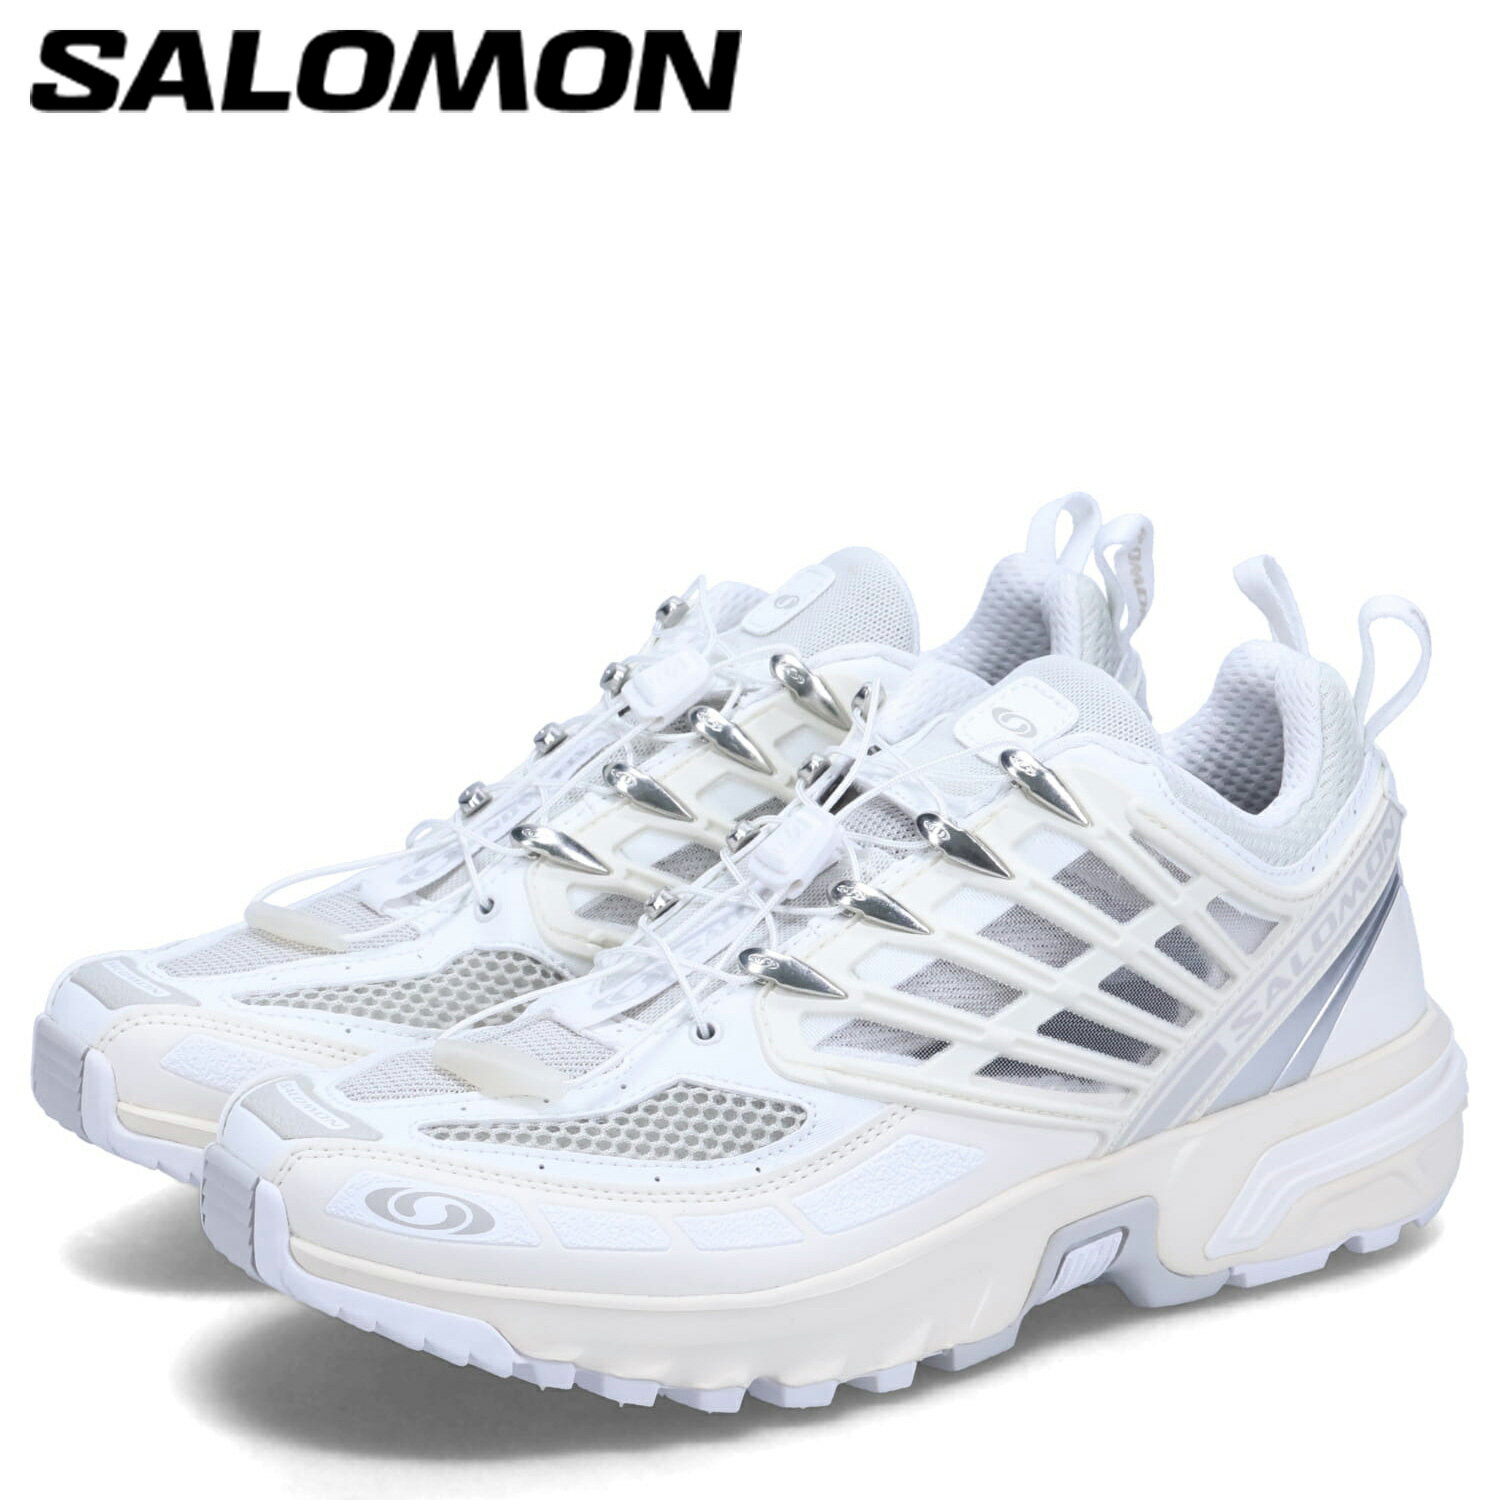 【訳あり】 【BOX破損】 SALOMON サロモン スニーカー エーシーエス プロ メンズ ACS PRO ホワイト 白 L47179900 【返品不可】